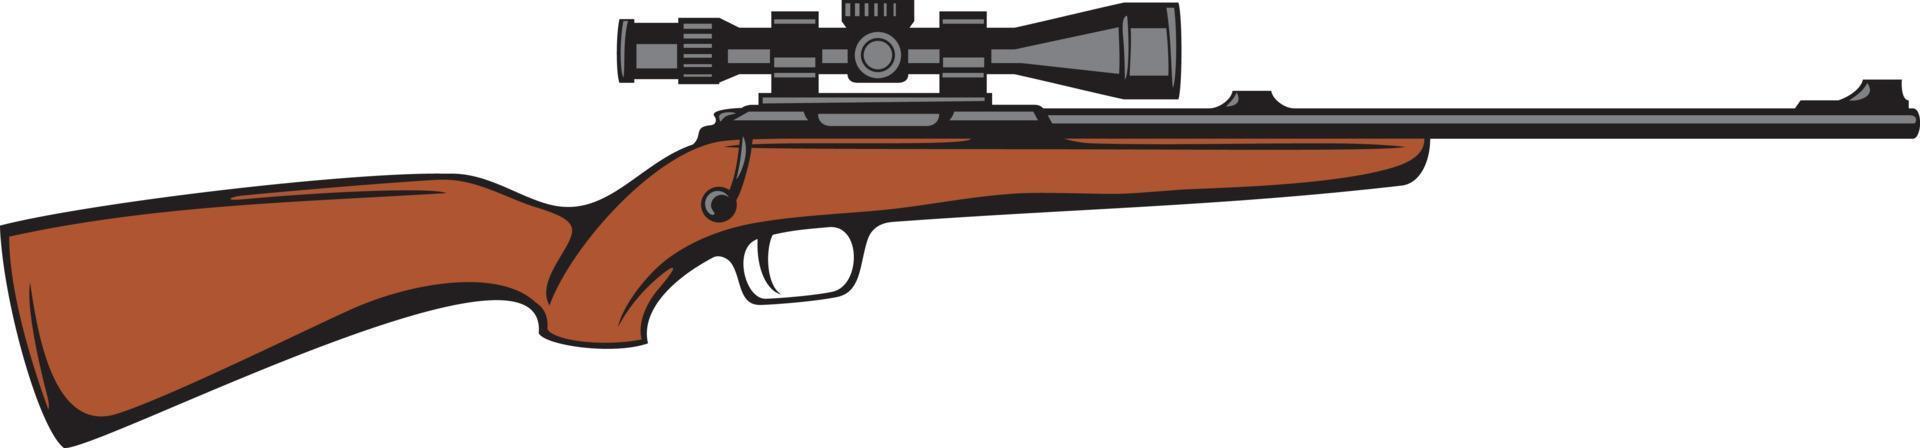 Jagdgewehr Farbe mit Zielfernrohr. Scharfschützen-Vektor-Illustration. vektor